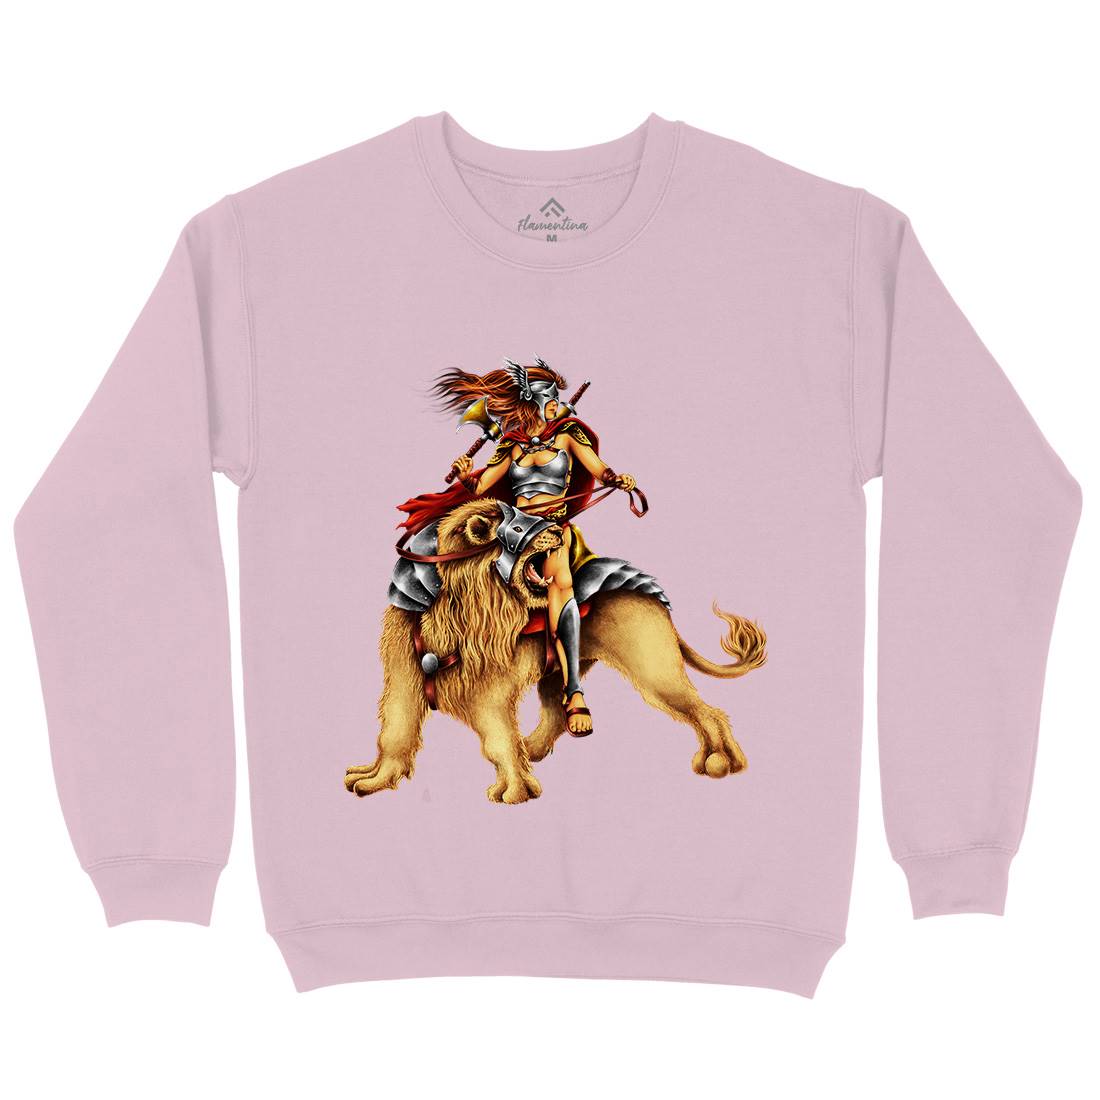 Lion Rider Kids Crew Neck Sweatshirt Warriors A483